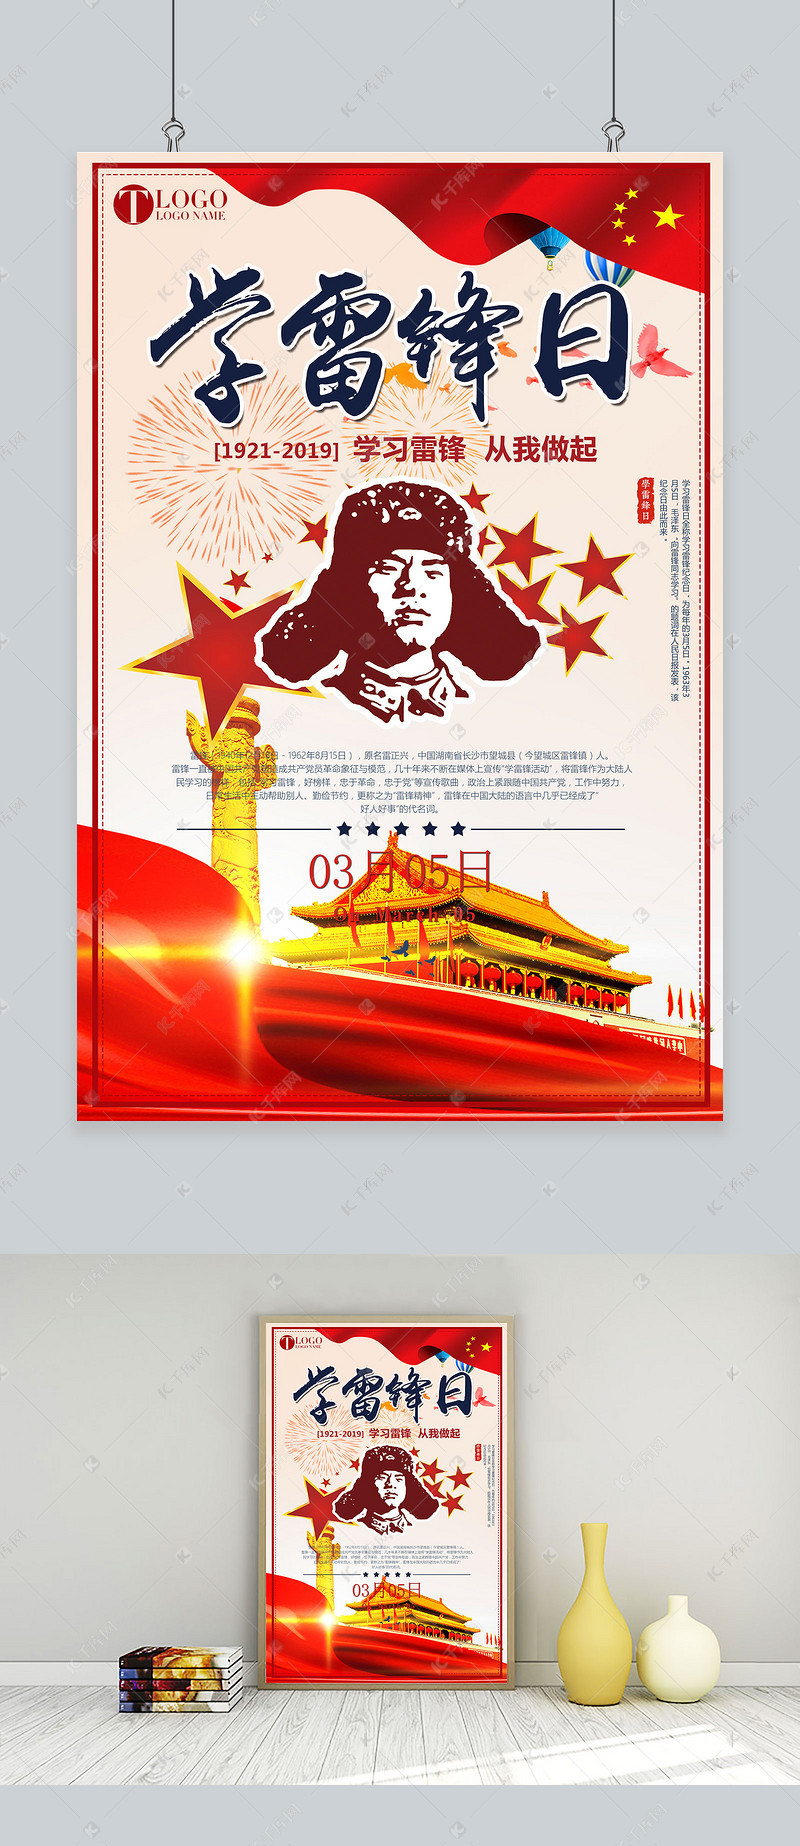 学雷锋日红色系社会主义风格雷锋精神海报海报模板-千